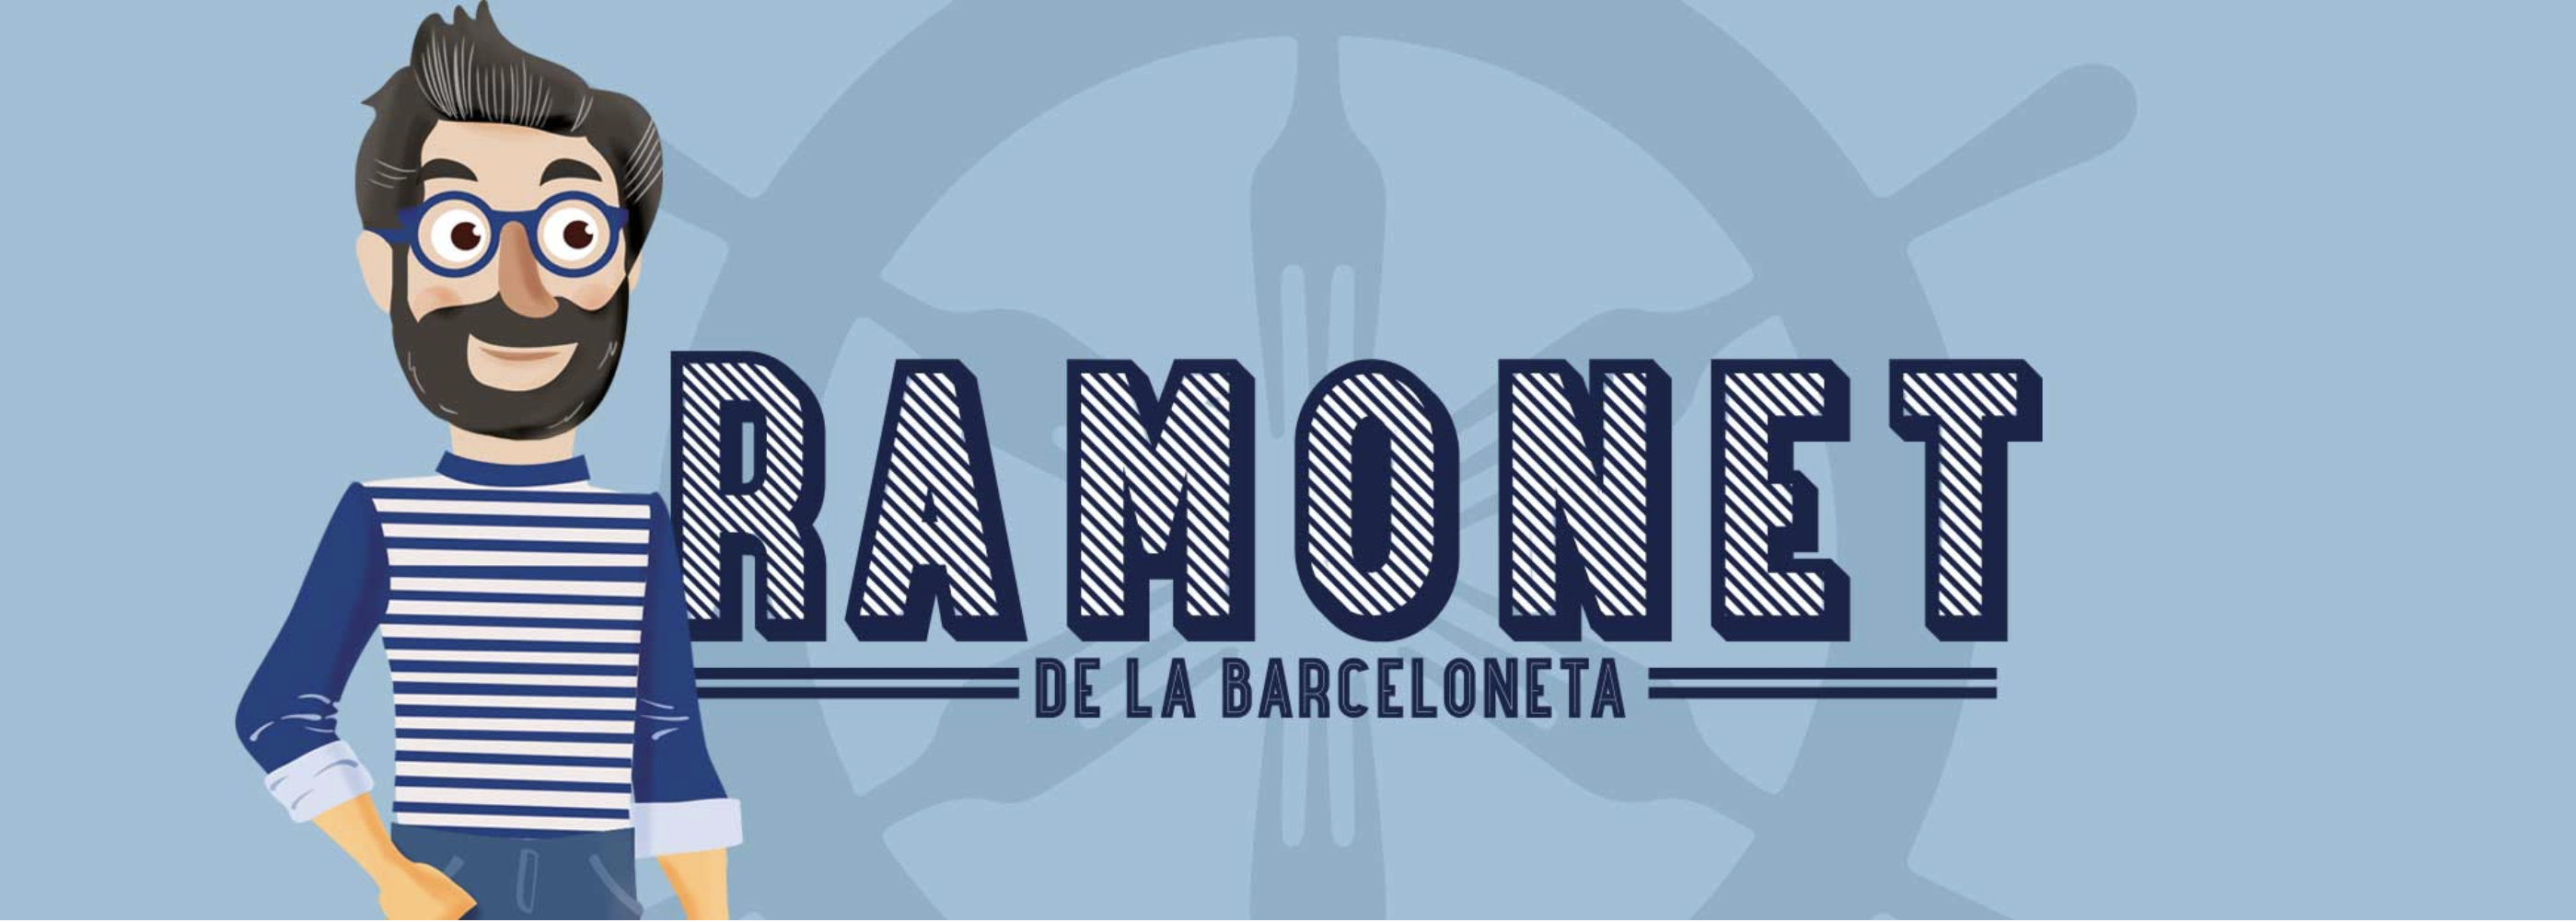 El Ramonet de la Barceloneta